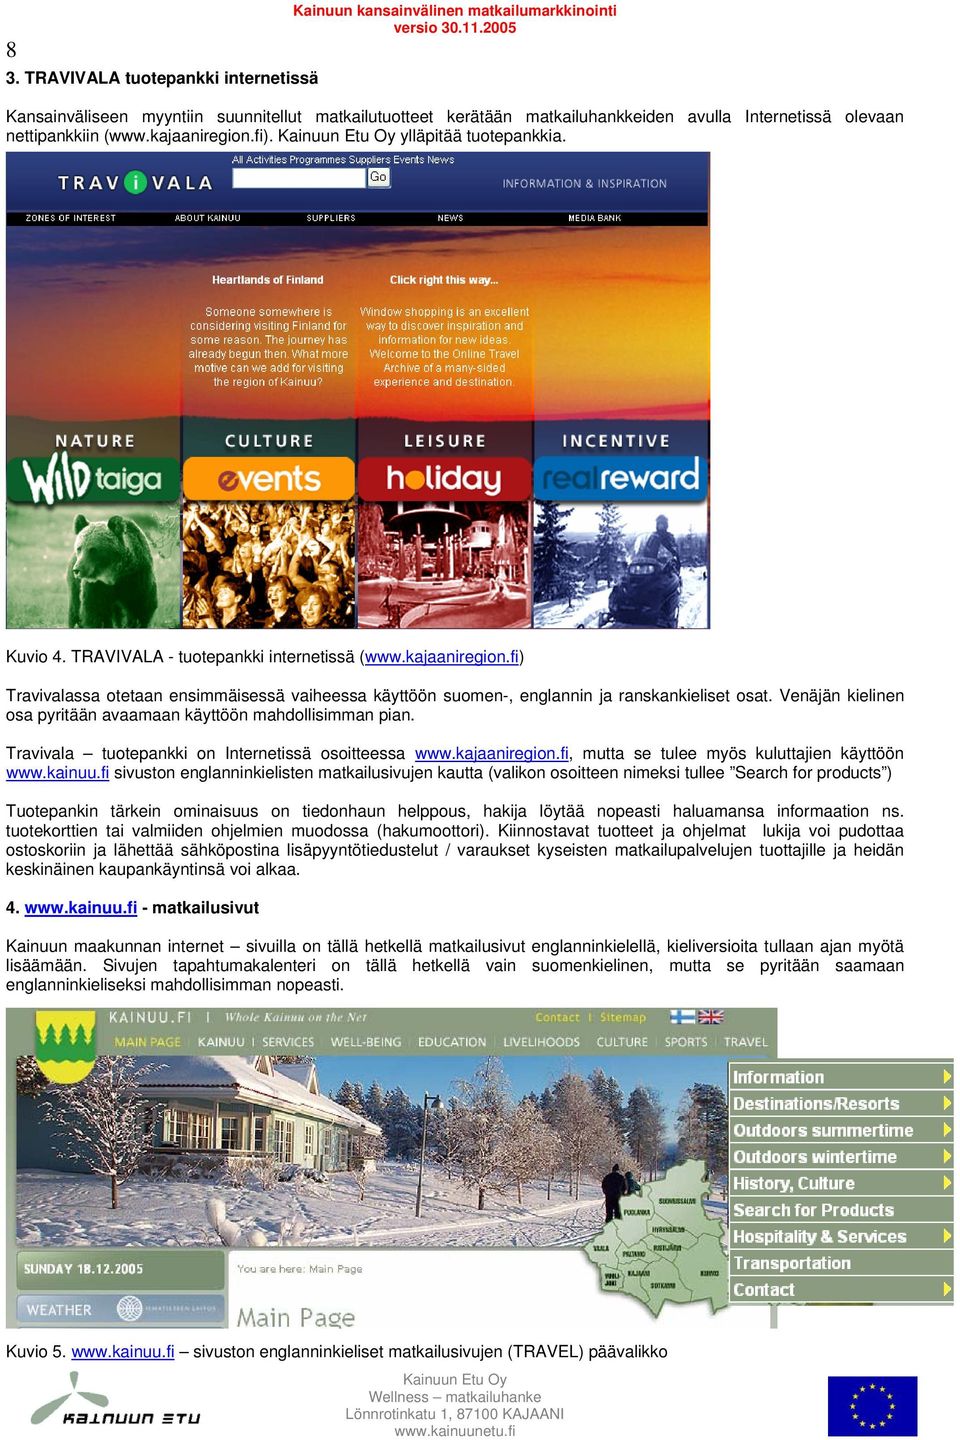 Venäjän kielinen osa pyritään avaamaan käyttöön mahdollisimman pian. Travivala tuotepankki on Internetissä osoitteessa www.kajaaniregion.fi, mutta se tulee myös kuluttajien käyttöön www.kainuu.